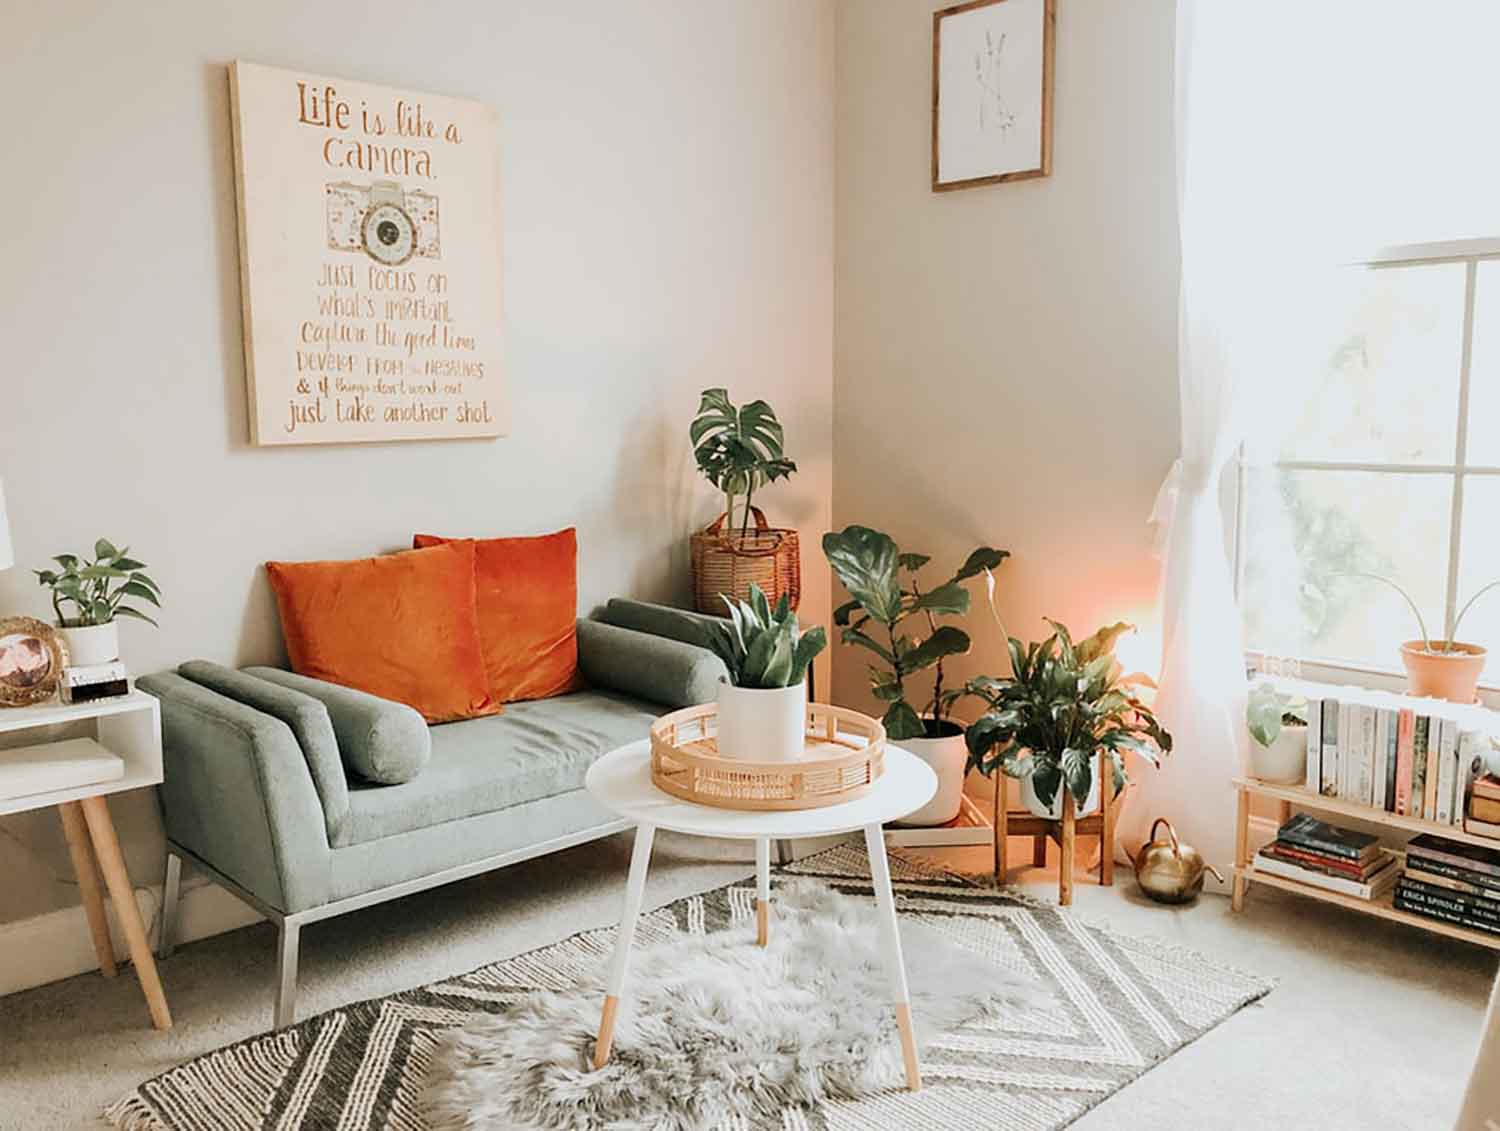 Memilih Sofa Yang Berukuran Sesuai Dengan Ruang Tamu Anda